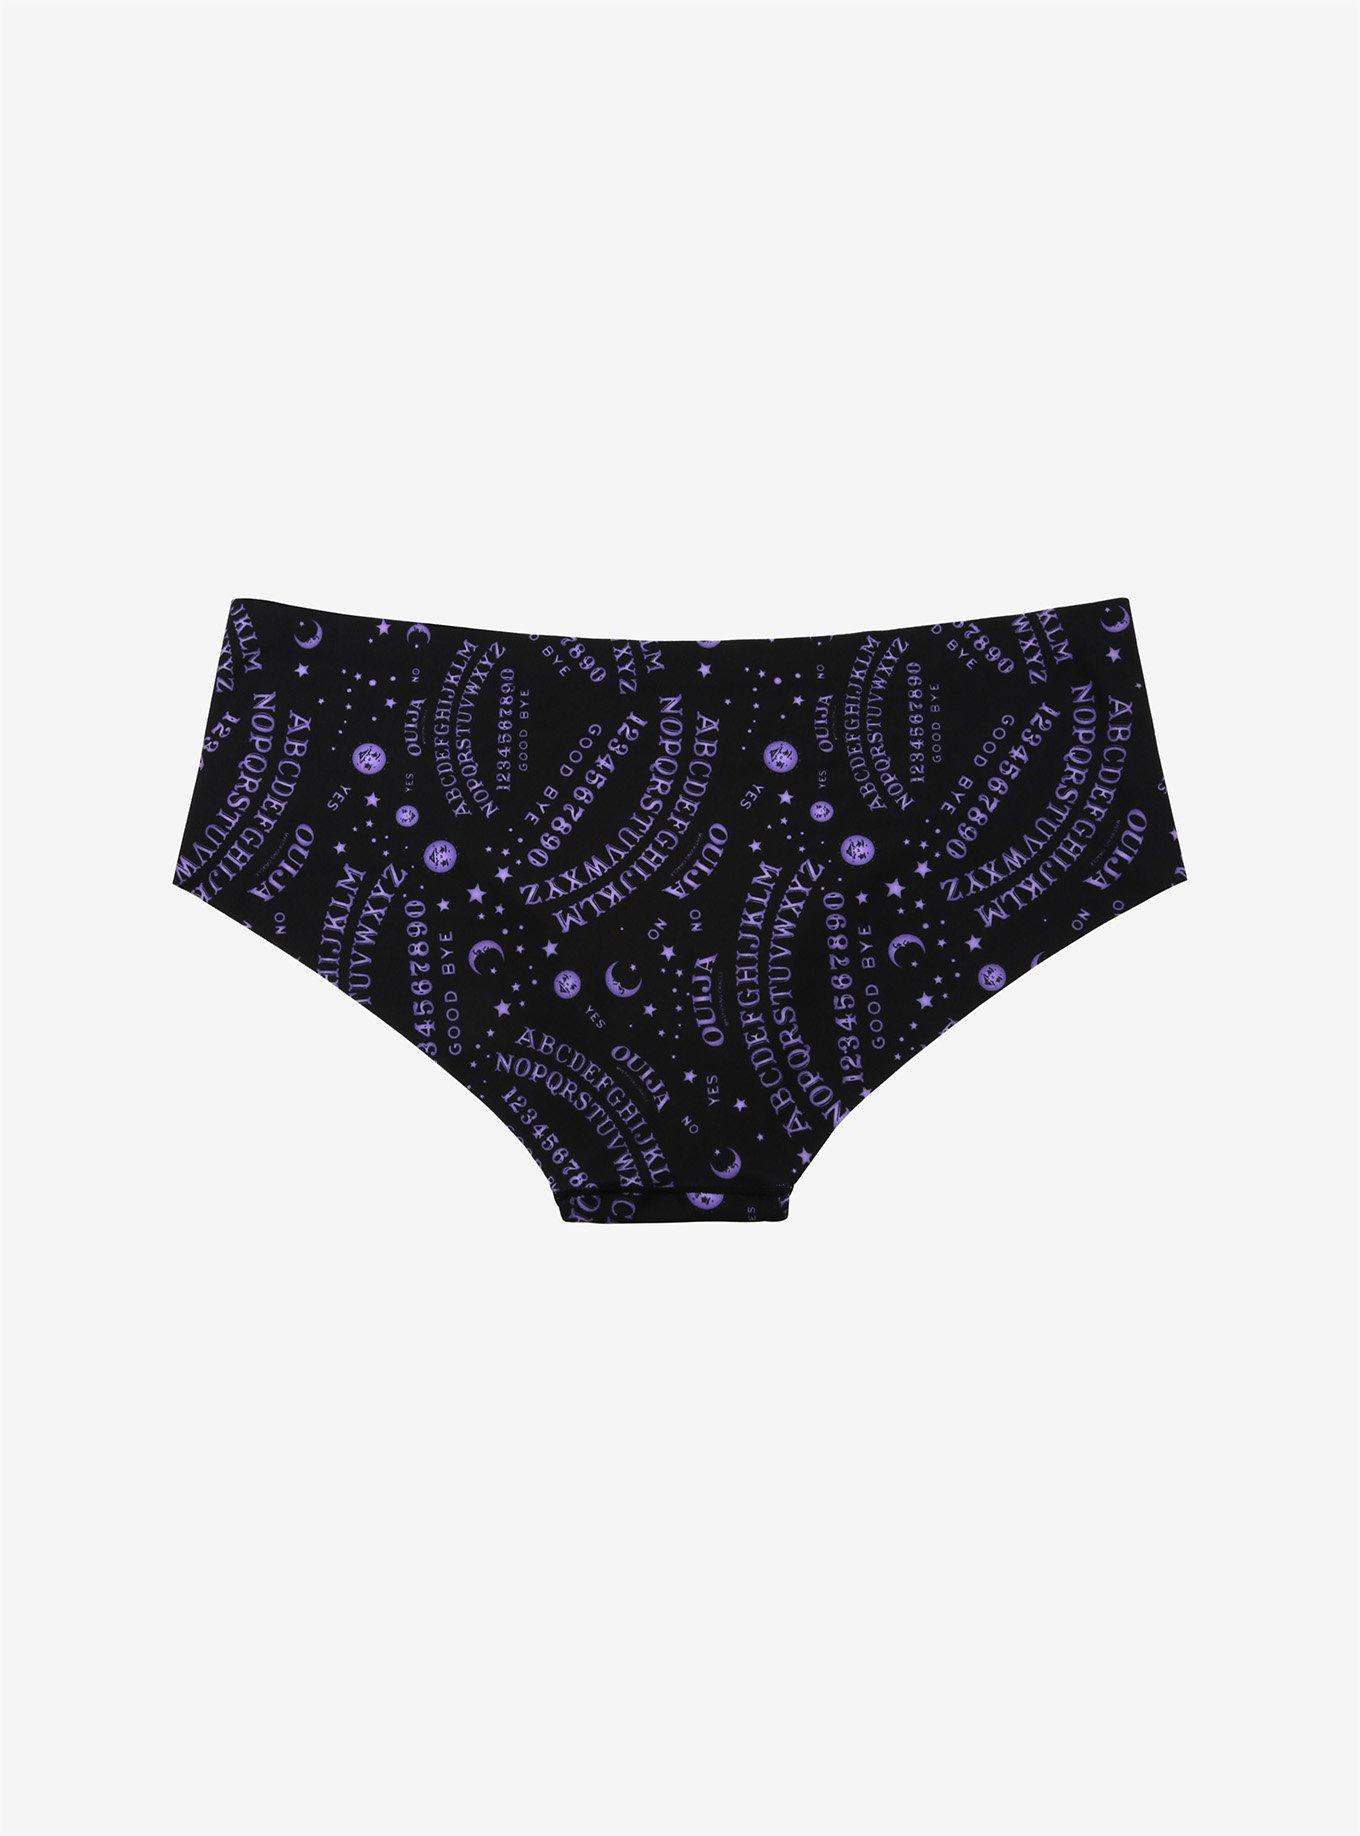 Ouija Purple & Black Hipster Panty, MULTI, alternate